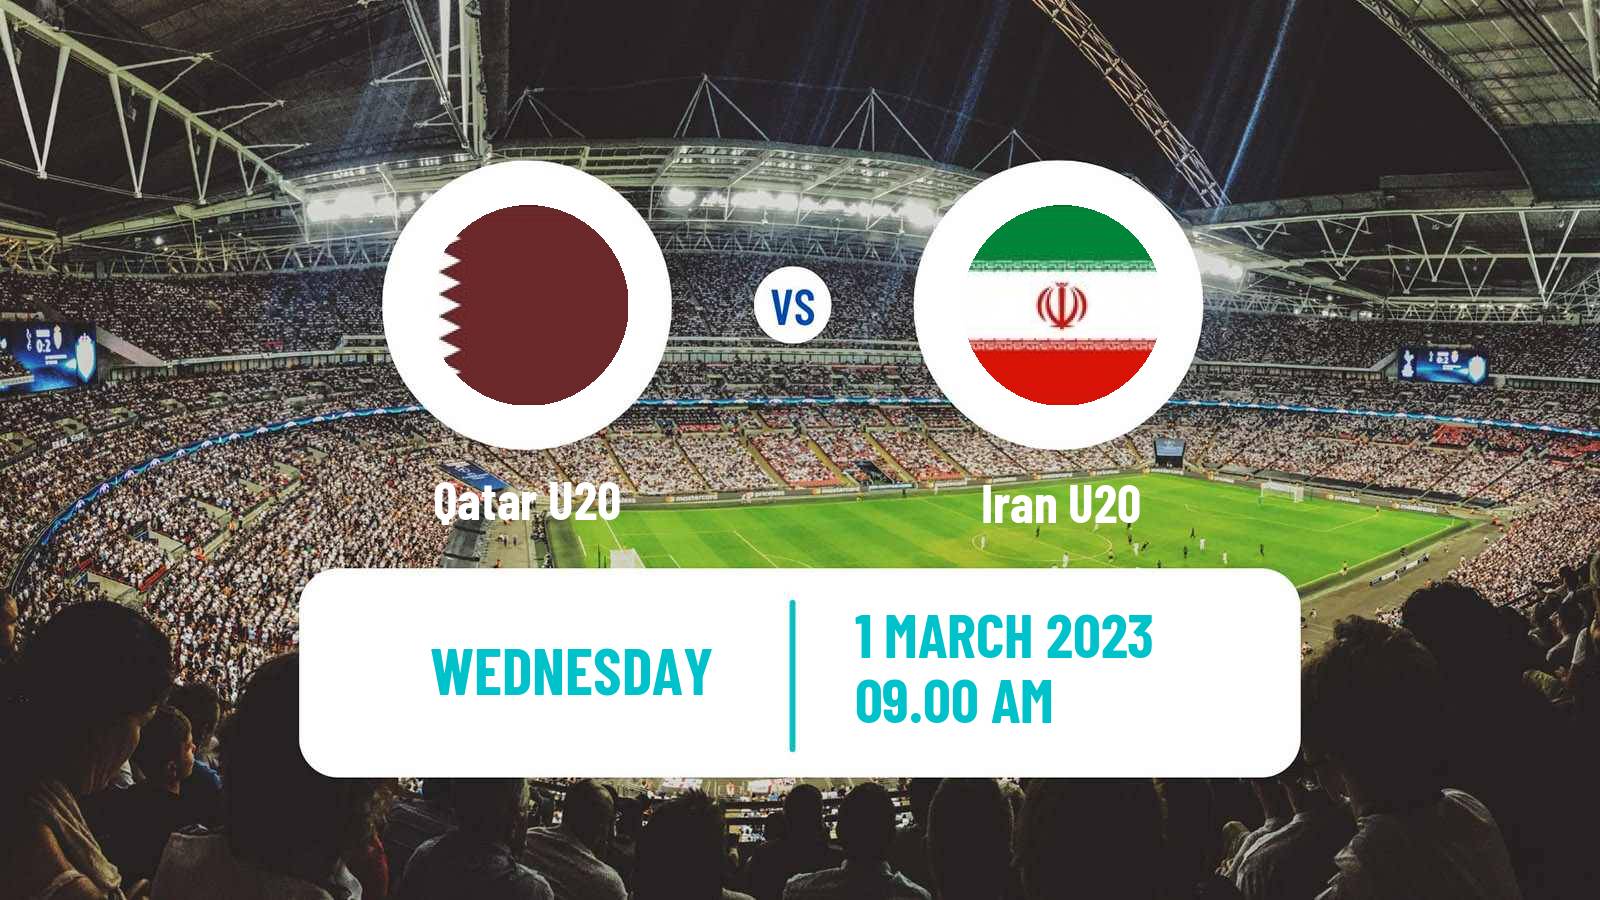 Soccer AFC Championship U20 Qatar U20 - Iran U20